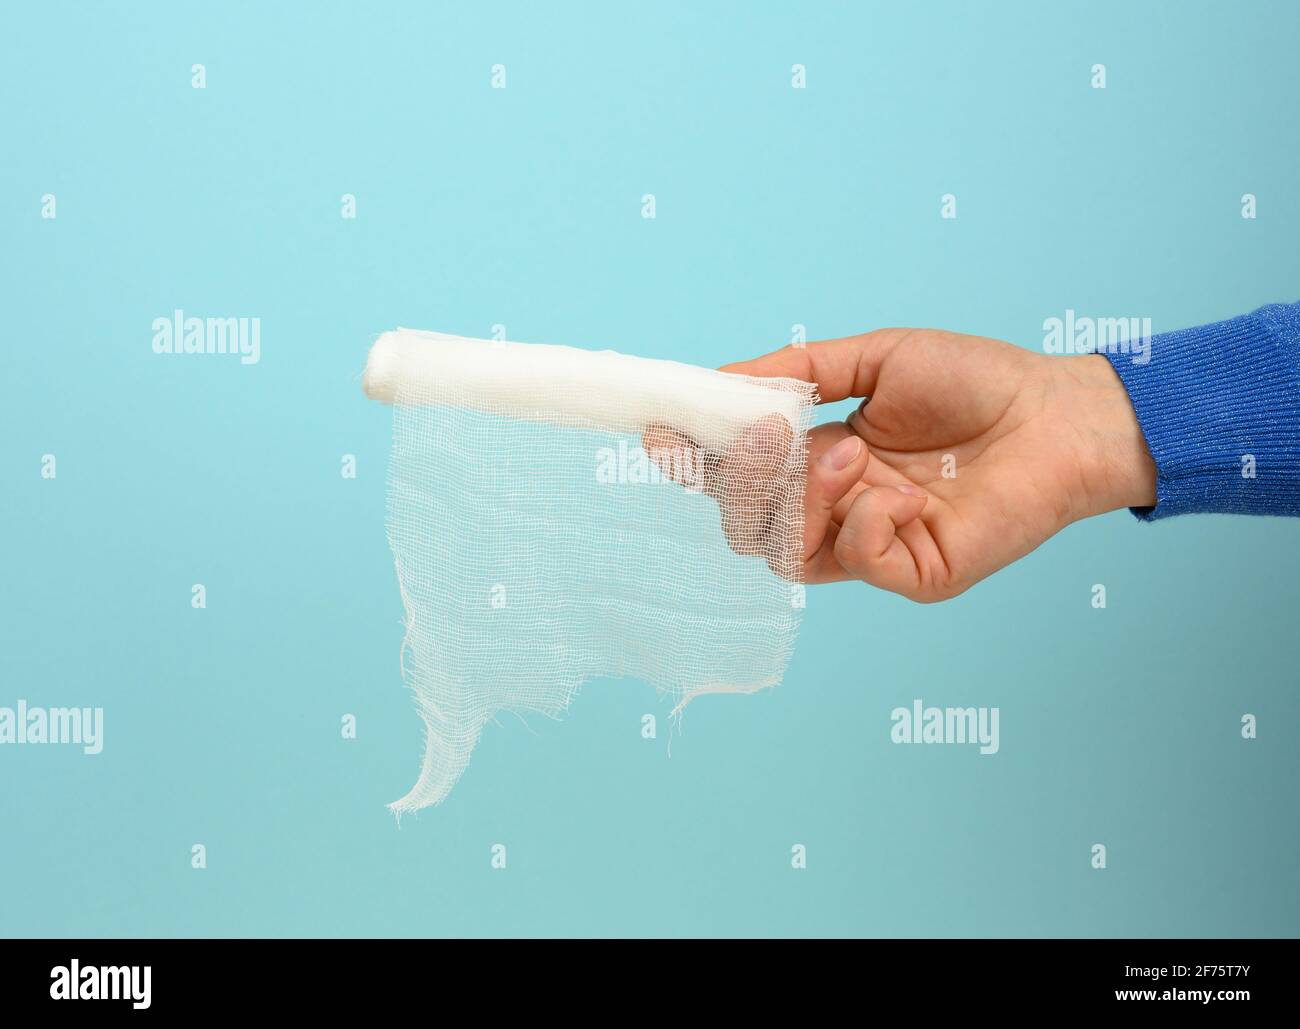 female hand holds white gauze bandage for bandaging limbs, blue background, close up Stock Photo